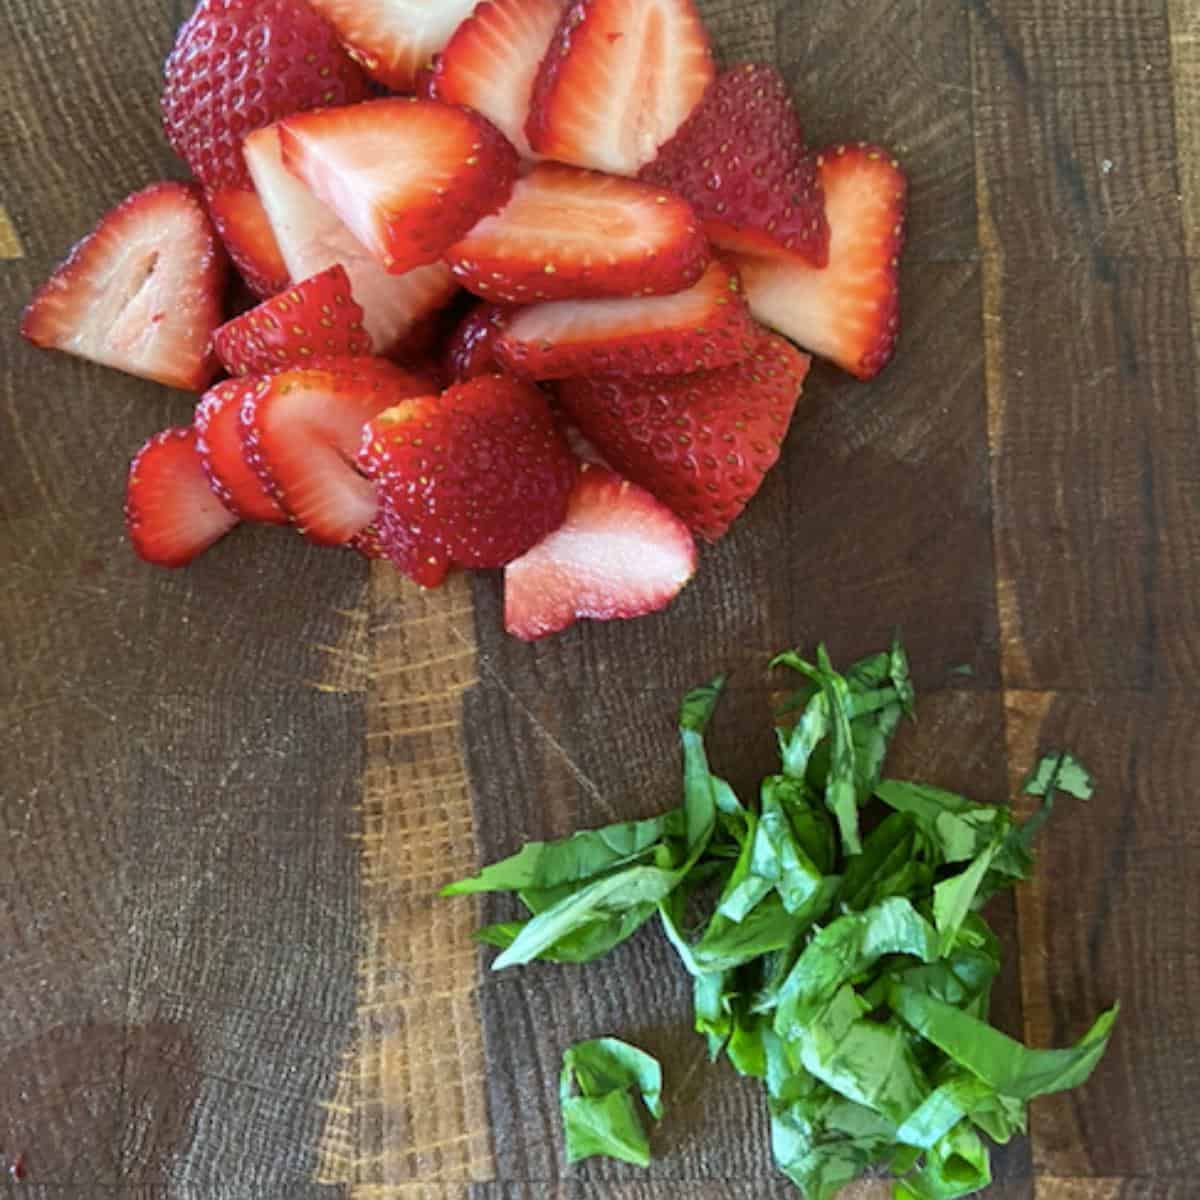 strawberries sliced and basil chiffonade